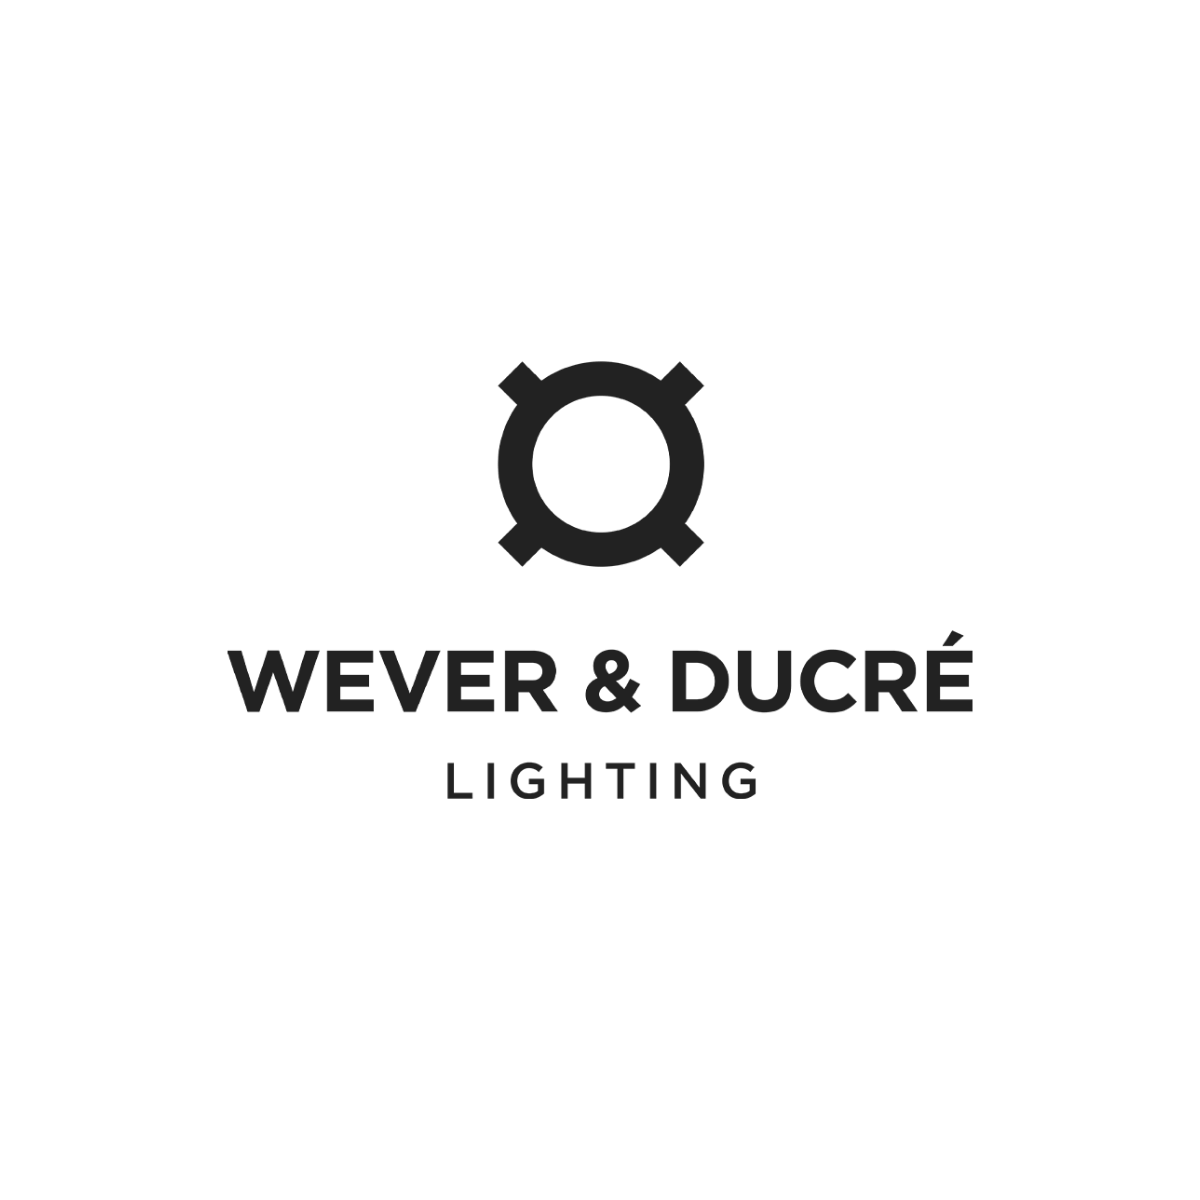 Wever & Ducré Lighting